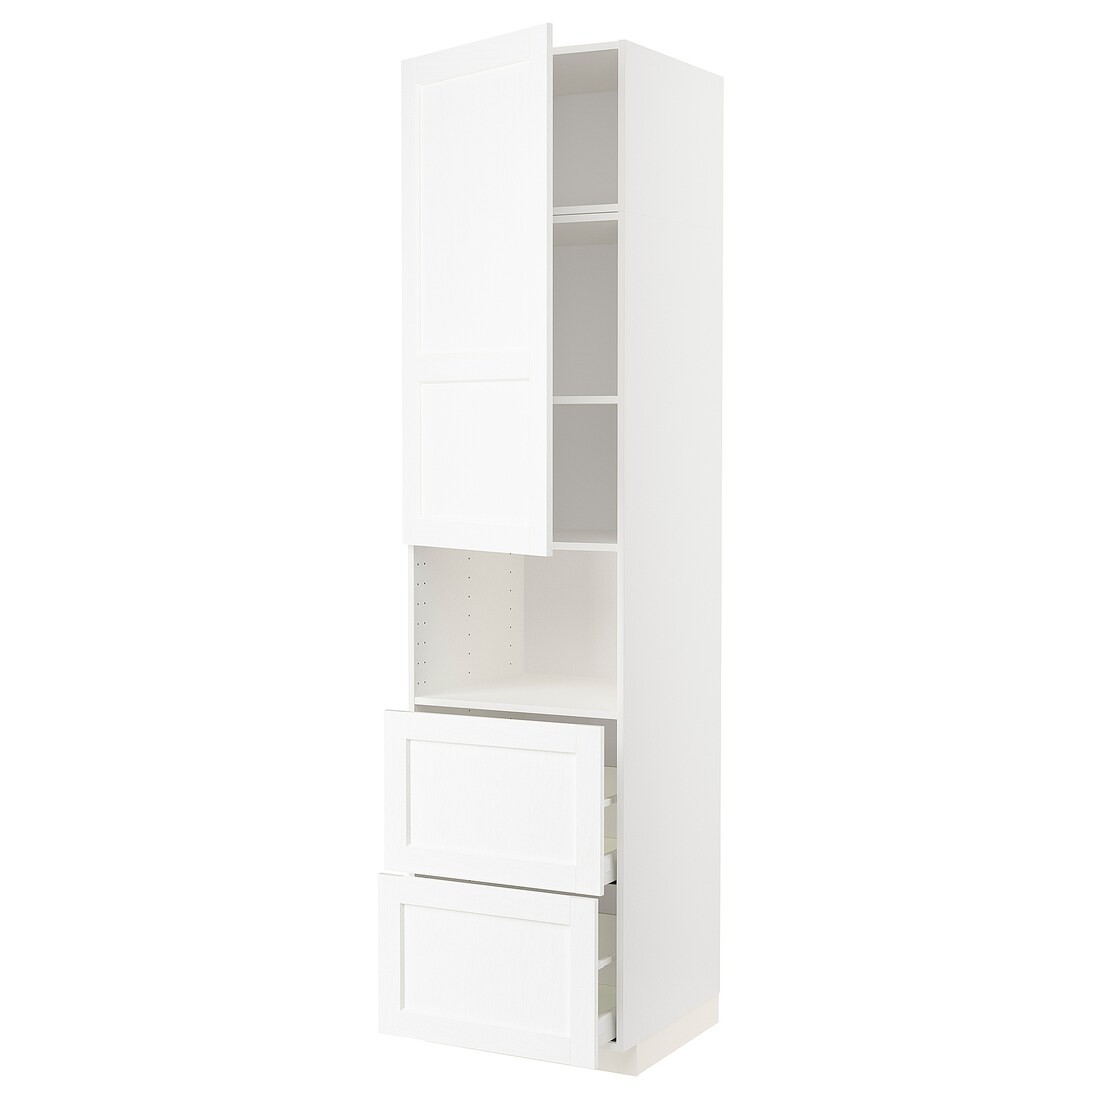 METOD МЕТОД / MAXIMERA МАКСИМЕРА Высокий шкаф для микроволновки с дверями / 2 ящика, белый Enköping / белый имитация дерева, 60x60x240 см